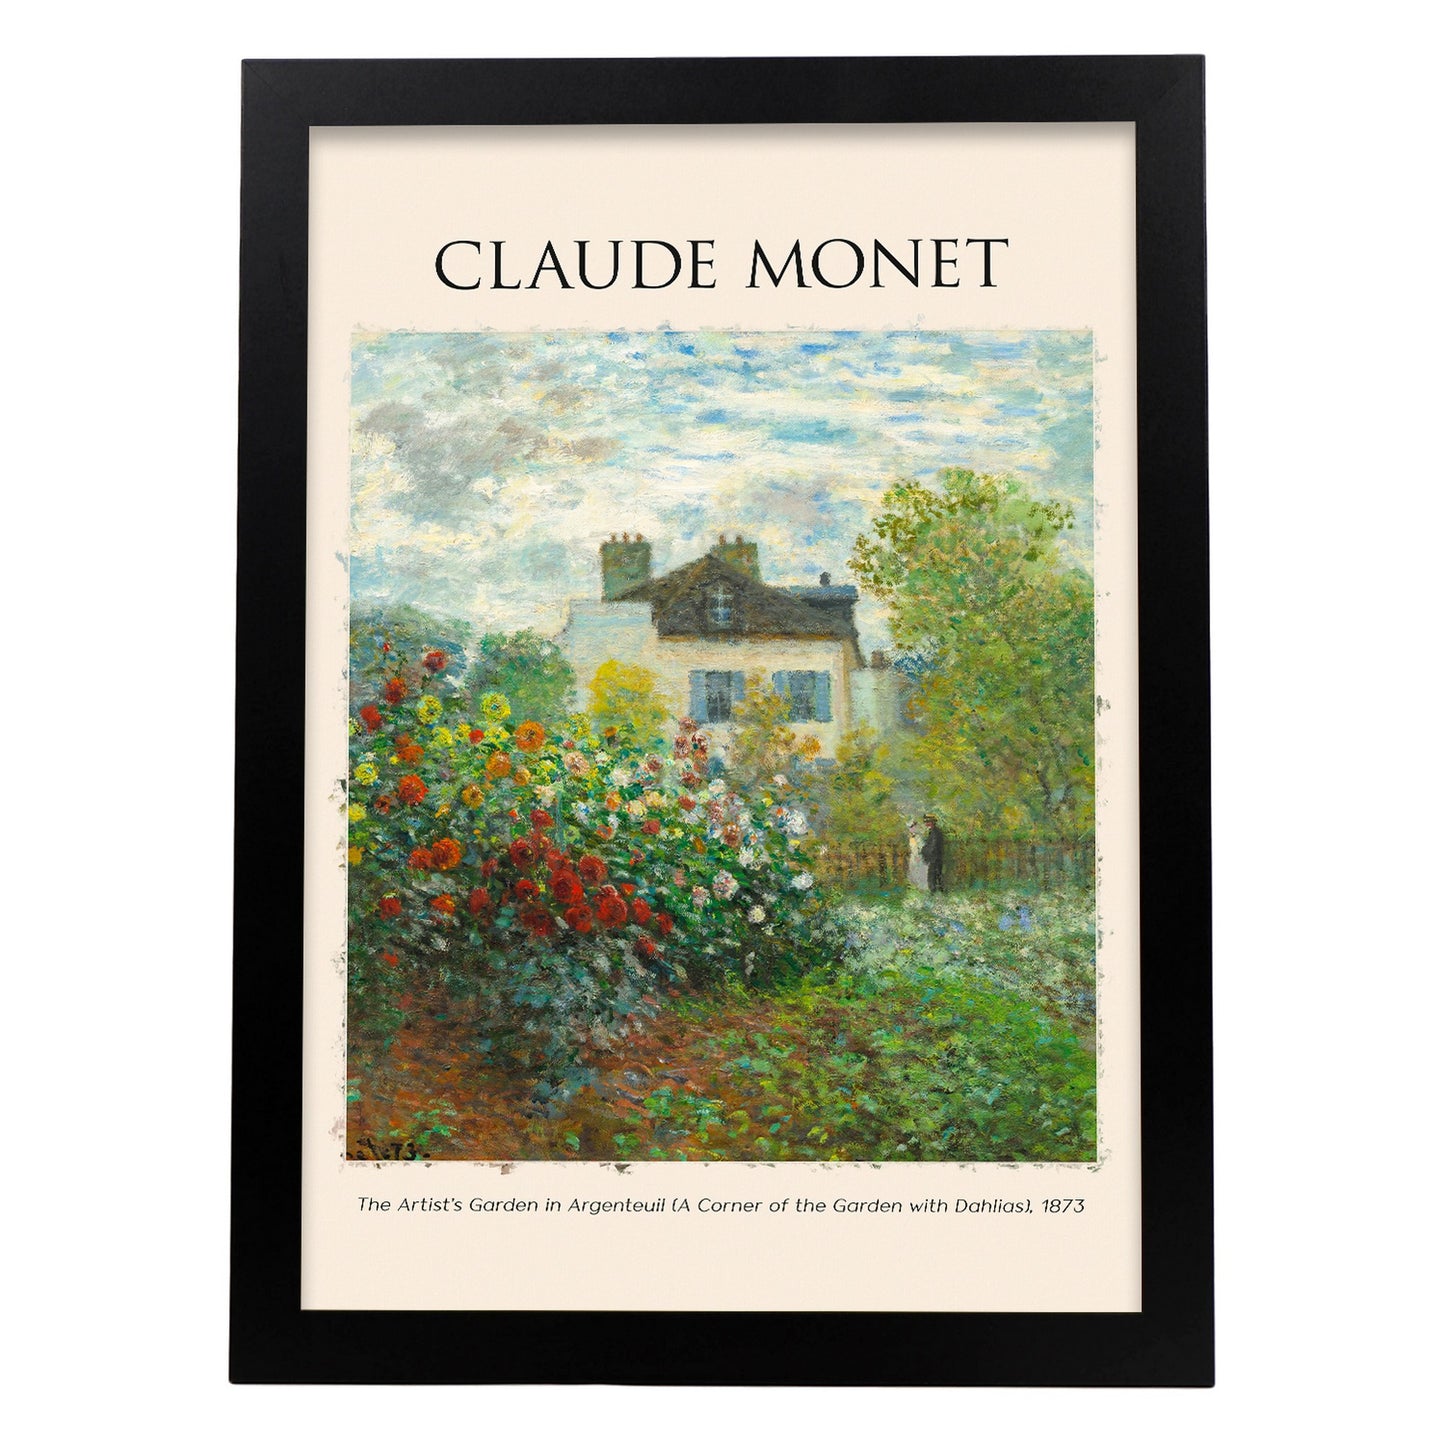 Lámina de Artists Garden en Argenteuil inspirada en Claude Monet